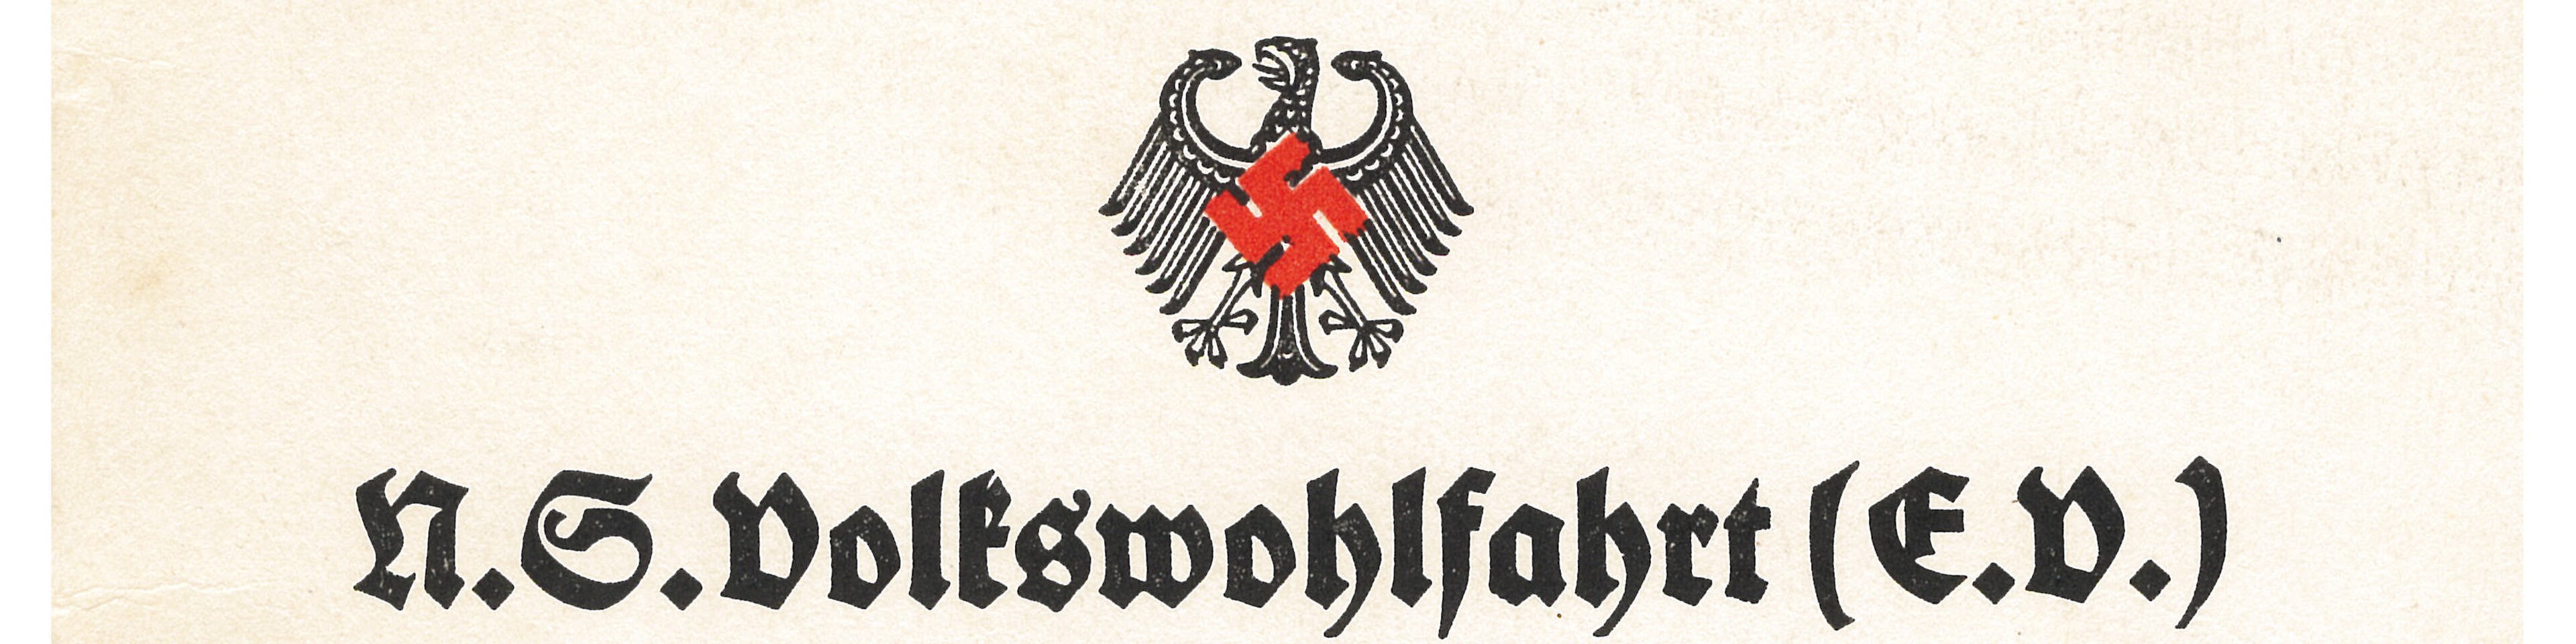 Arbeitsrichtlinien für die NSV, herausgegeben von der Reichsleitung, Berlin 1933. | © (Archiv des DiCV München und Freising e.V., Altregistratur)